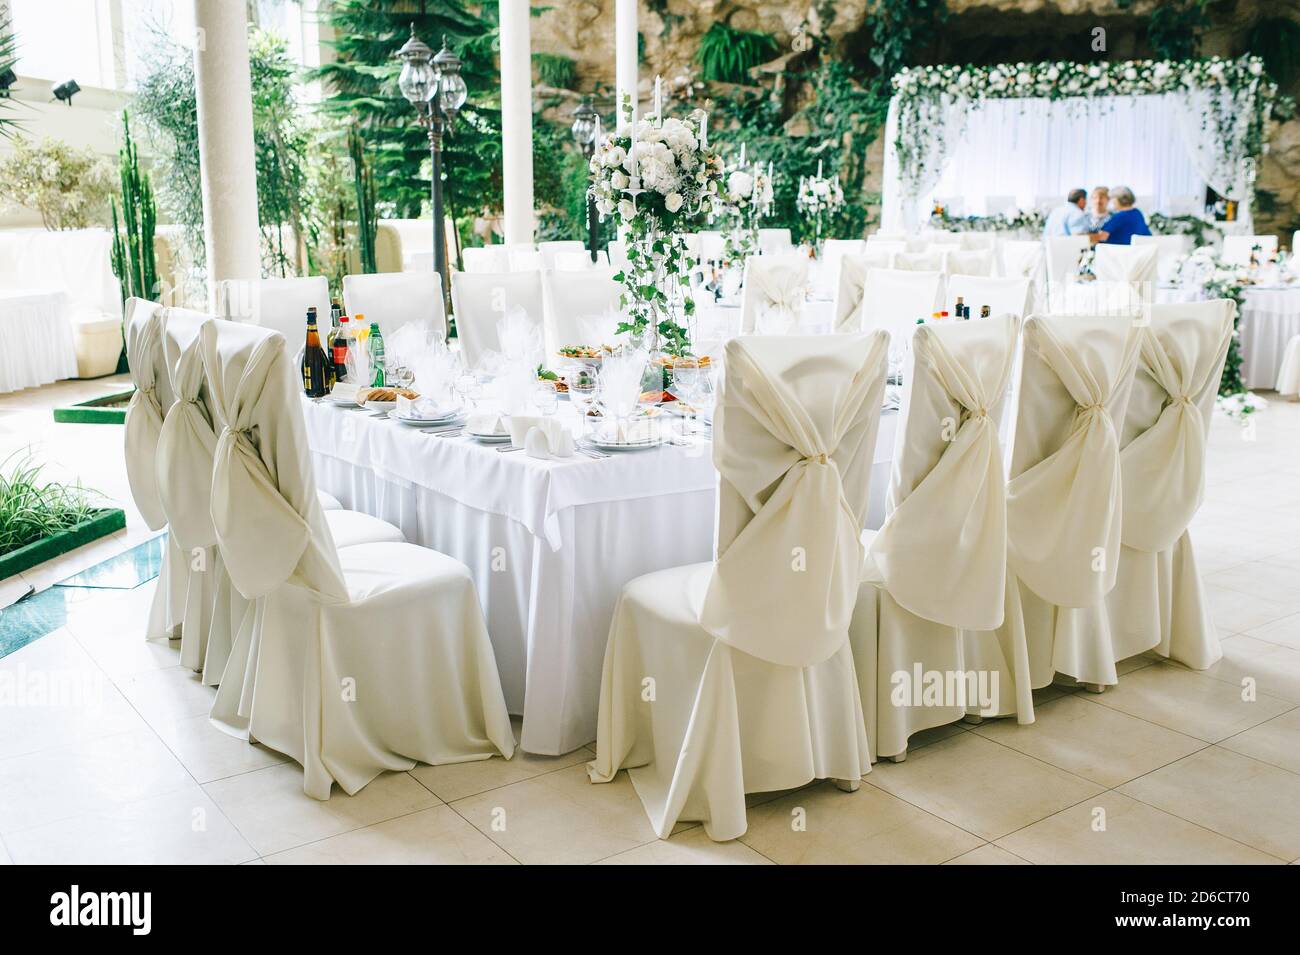 Il tavolo del matrimonio in colori pastello è decorato con fiori e un candelabro d'epoca. Foto Stock